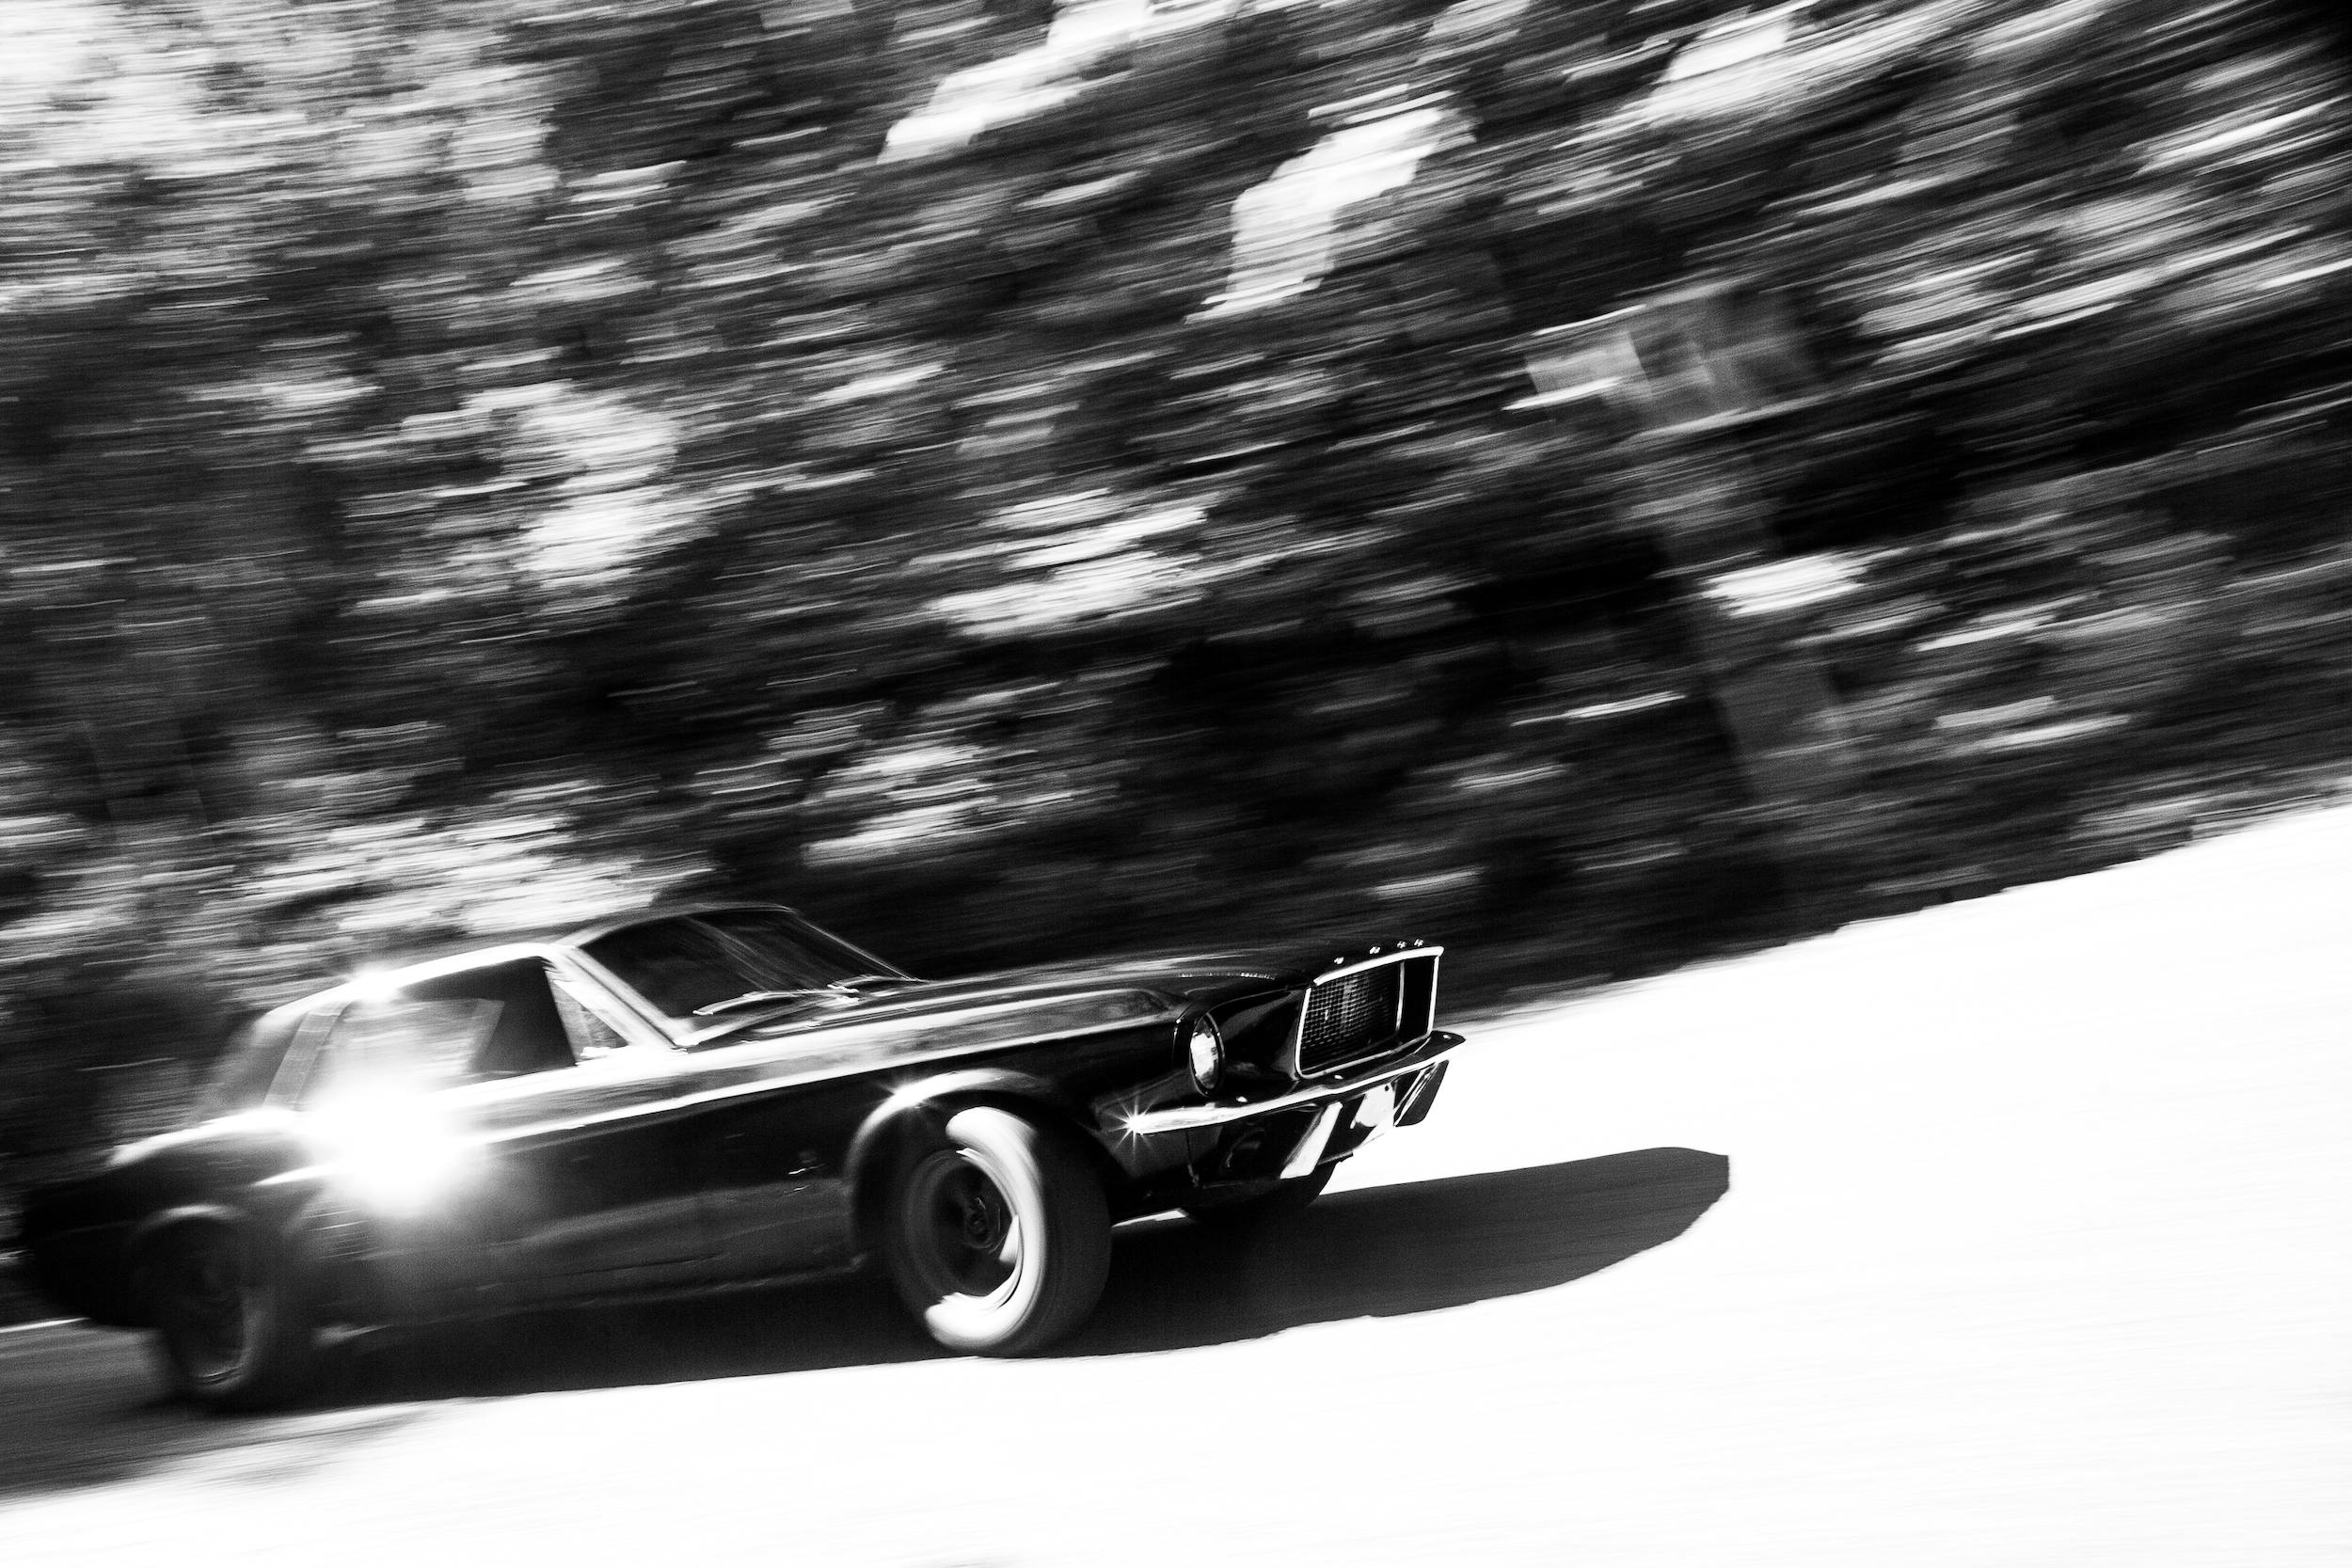 Crustang Ford Mustang Patina car action pan blur black white